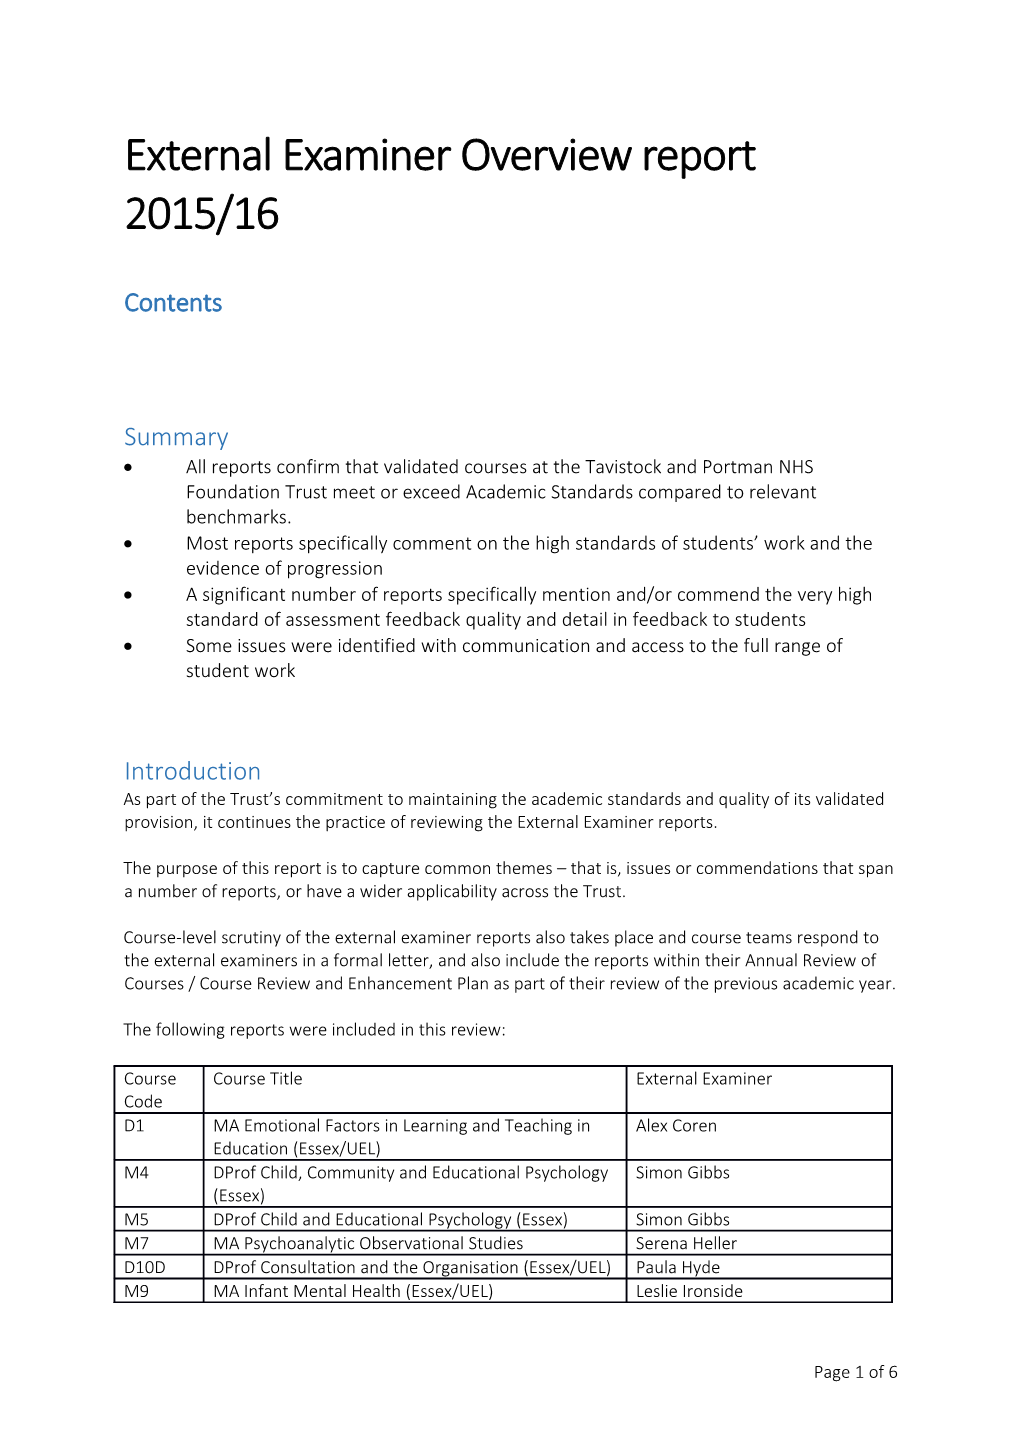 External Examiner Overview Report 2015/16